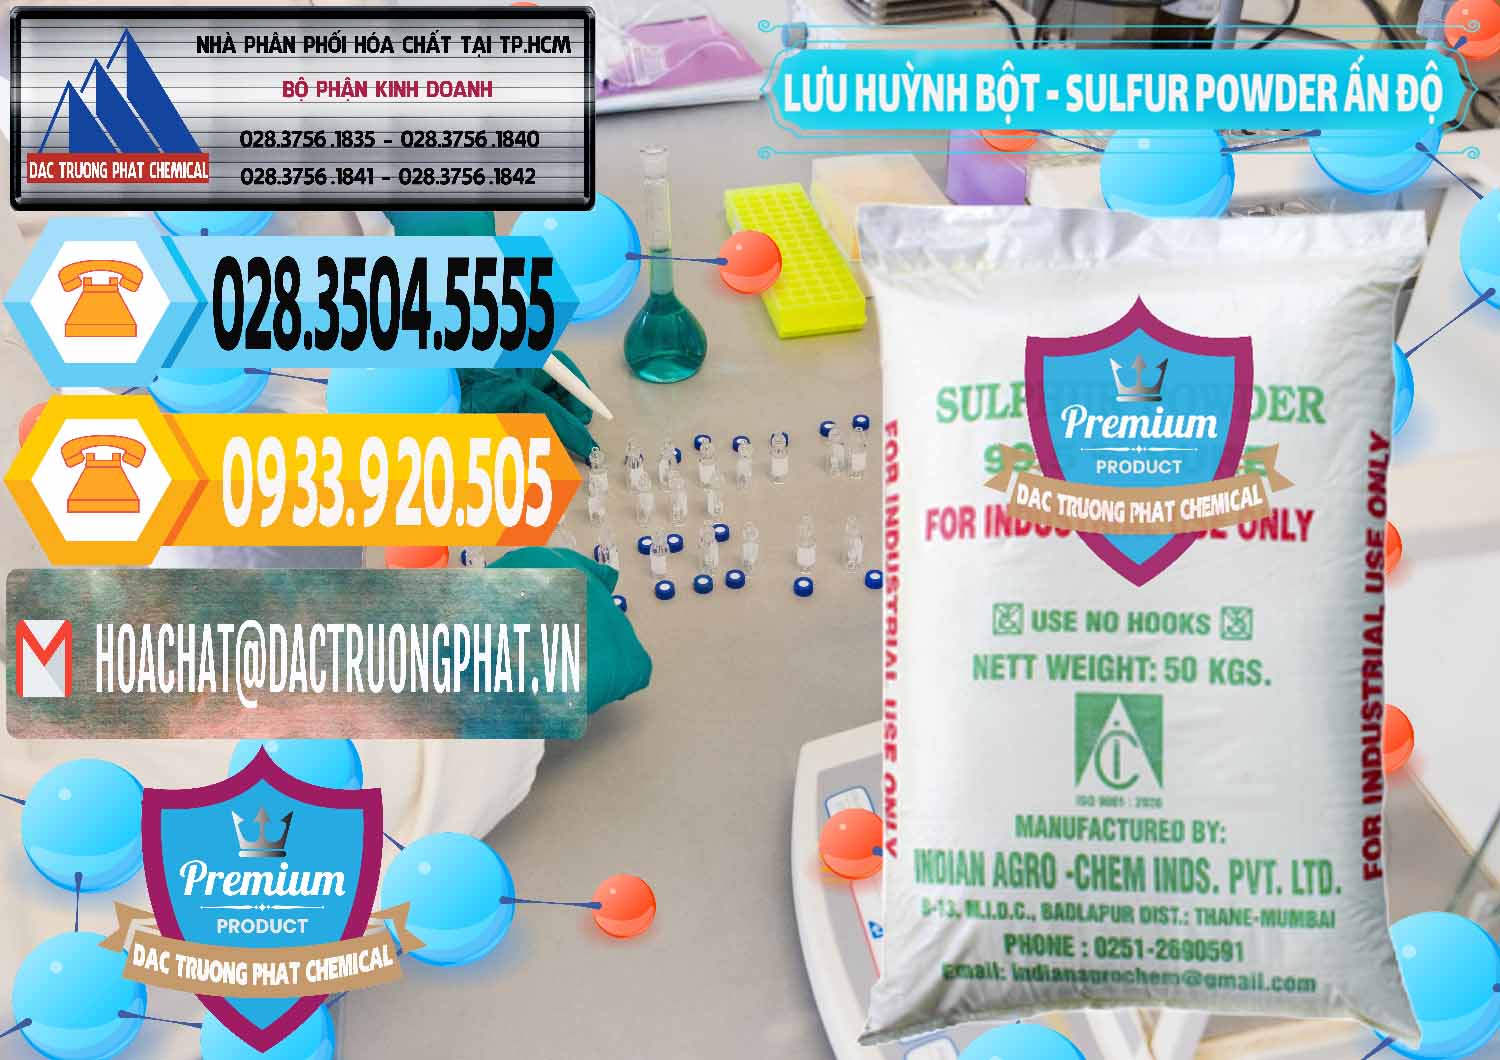 Cty kinh doanh & bán Lưu huỳnh Bột - Sulfur Powder Ấn Độ India - 0347 - Kinh doanh ( cung cấp ) hóa chất tại TP.HCM - hoachattayrua.net